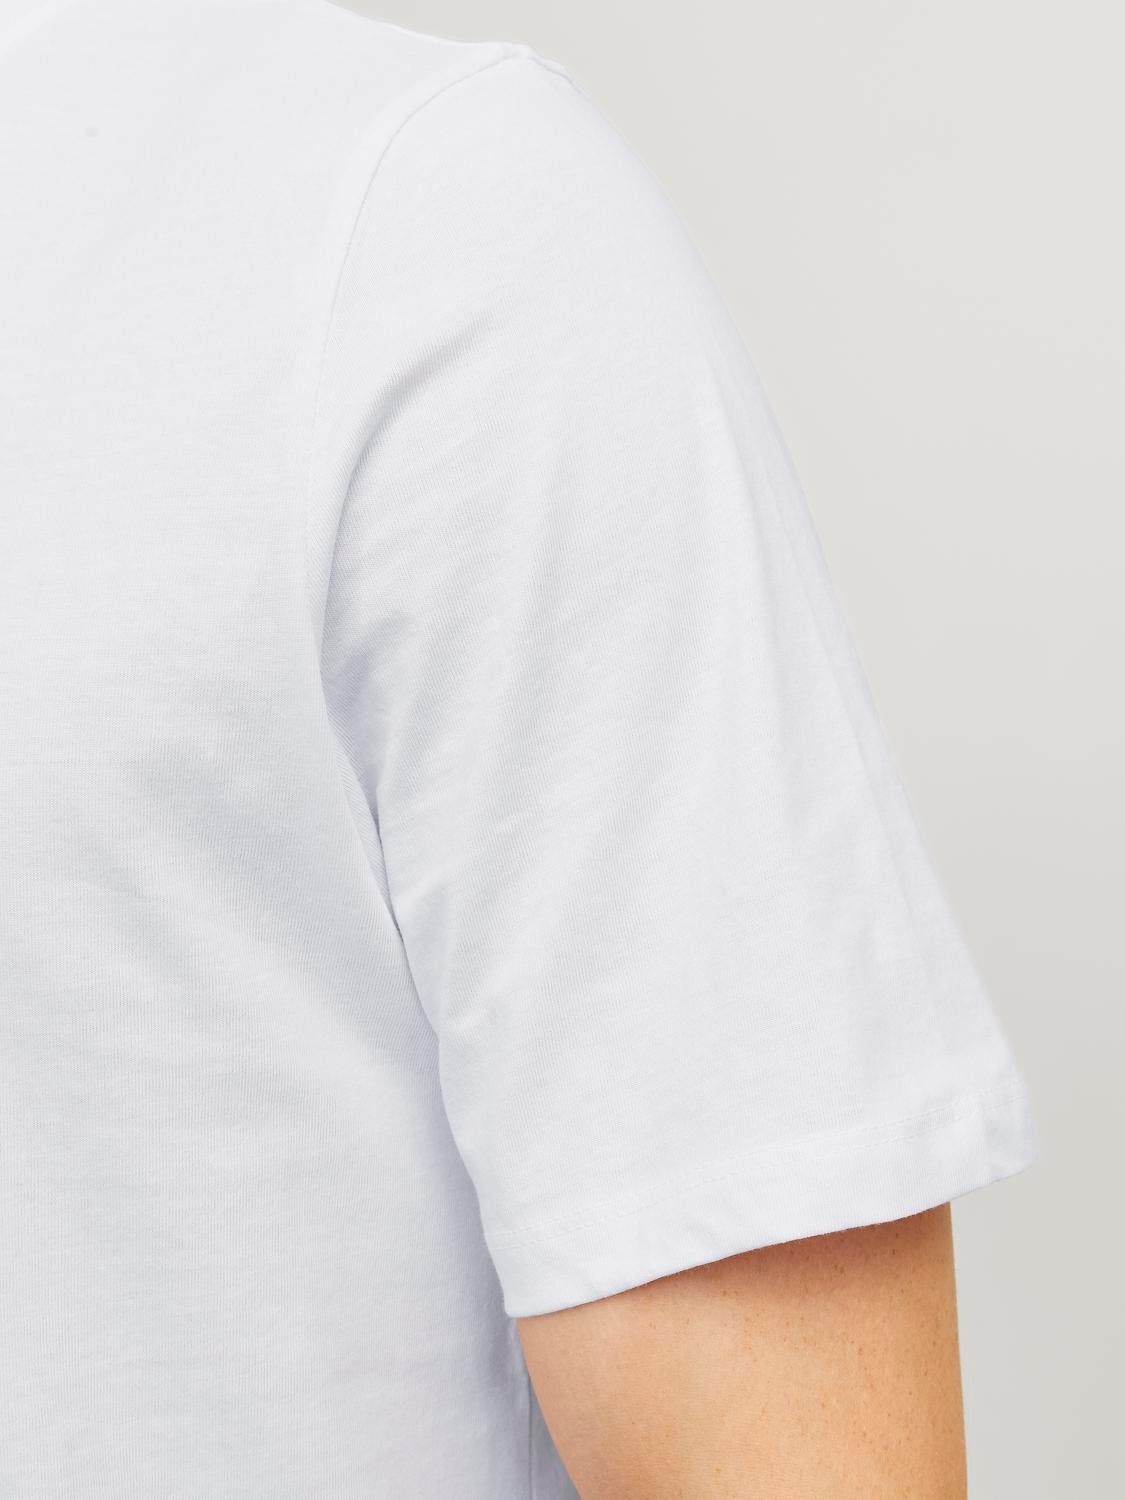 Jack & Jones Camiseta Liso Cuello redondo -White - 12113648